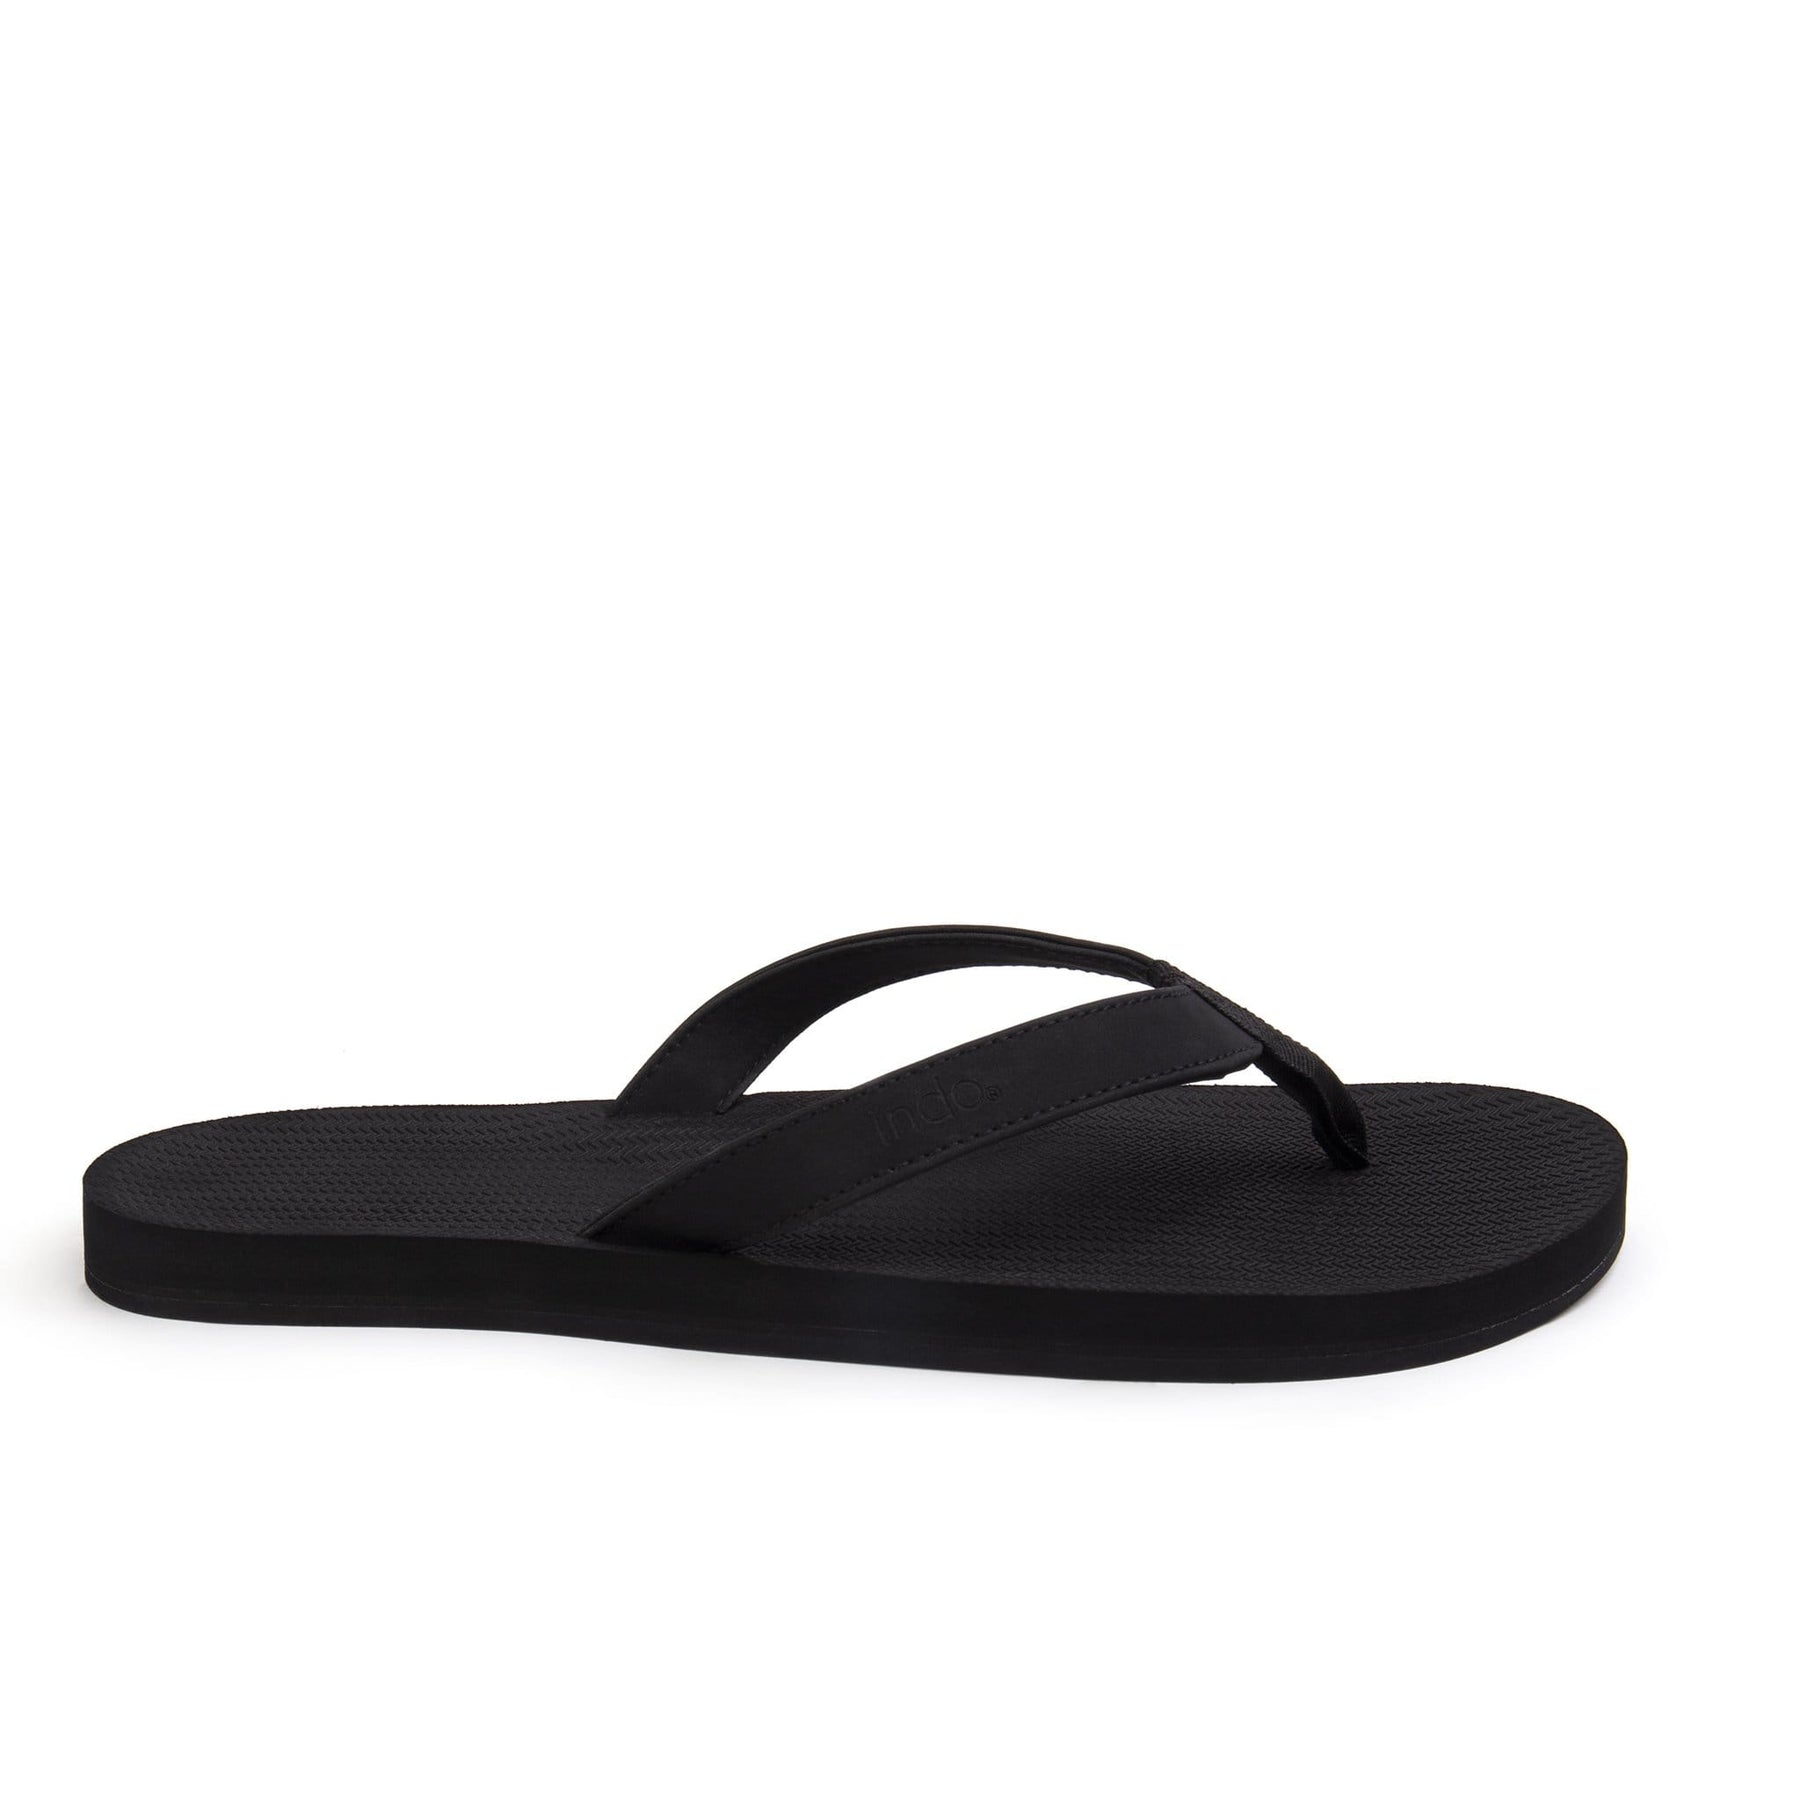 flip flops sandals